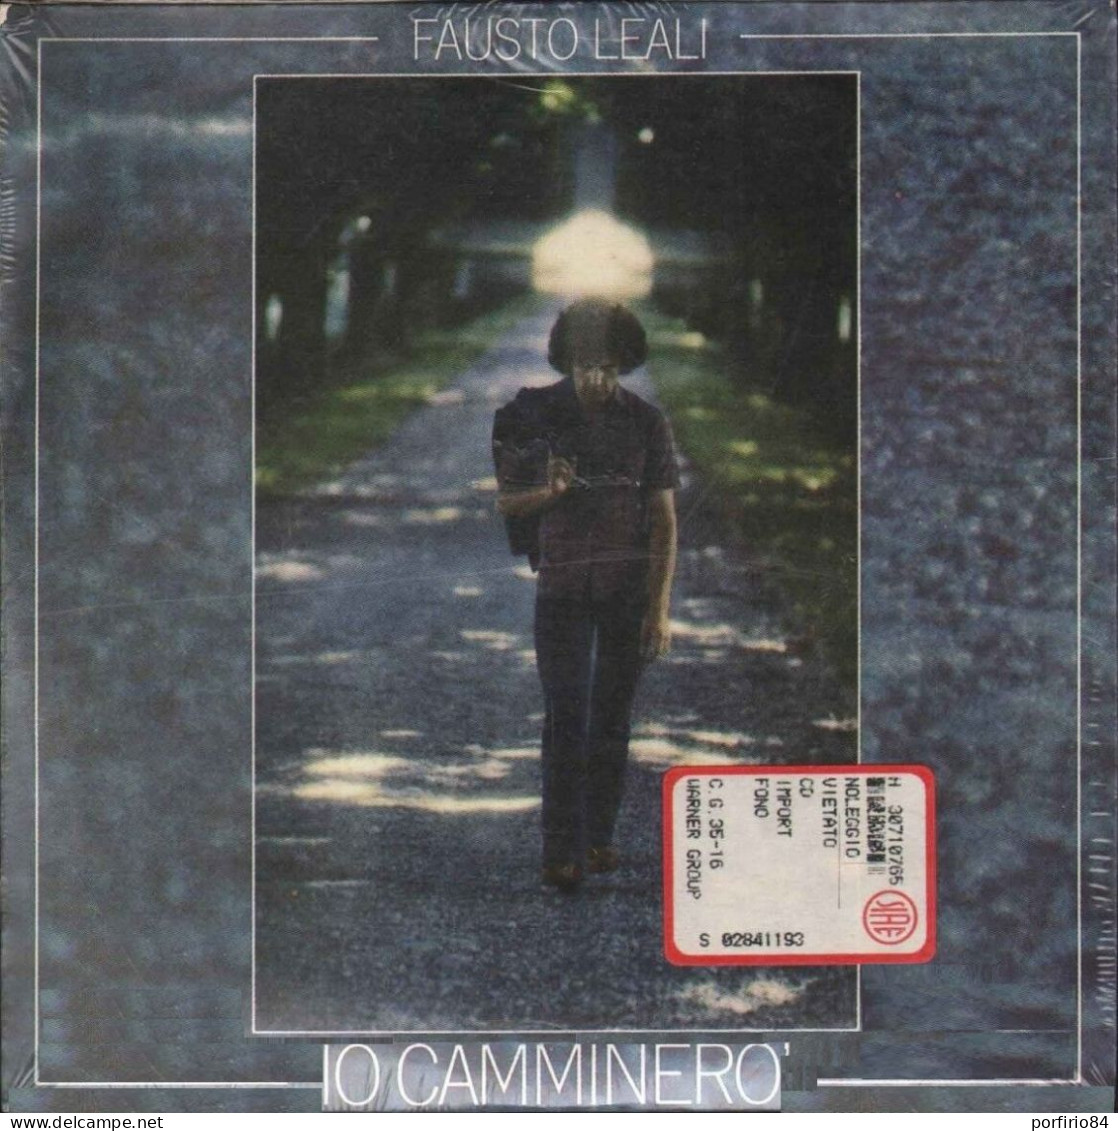 FAUSTO LEALI CD IO CAMMINERO' - A CHI 1987 - SIGILLATO DA COLLEZIONE - Other - Italian Music